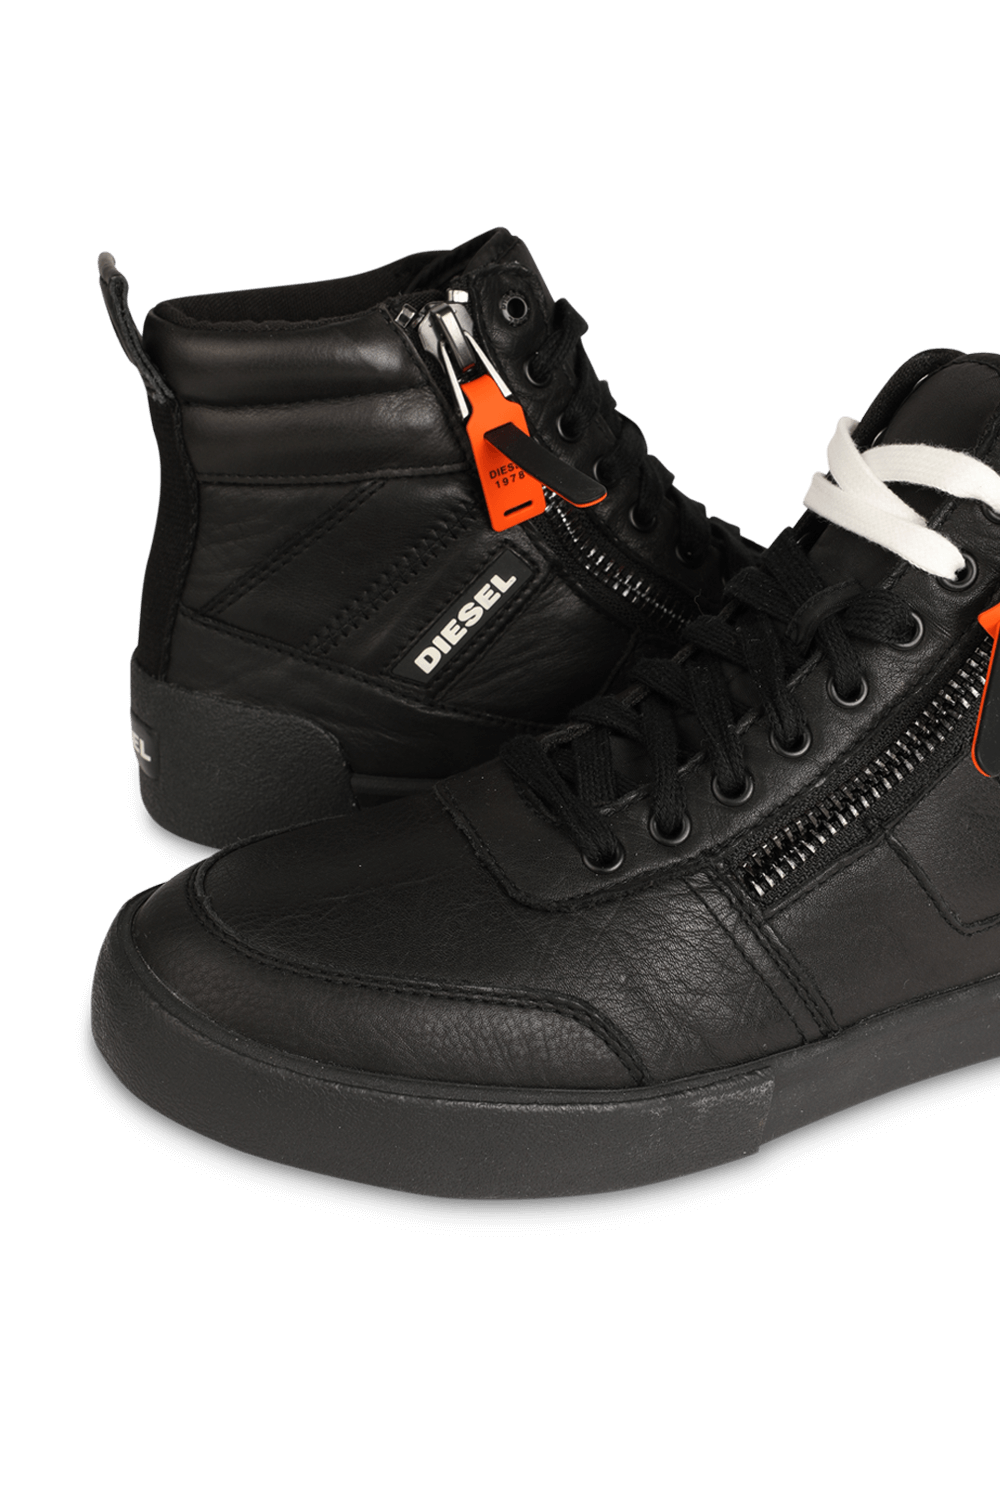 S- Velows Mid Cut Sneakers in Black Leather DIESEL